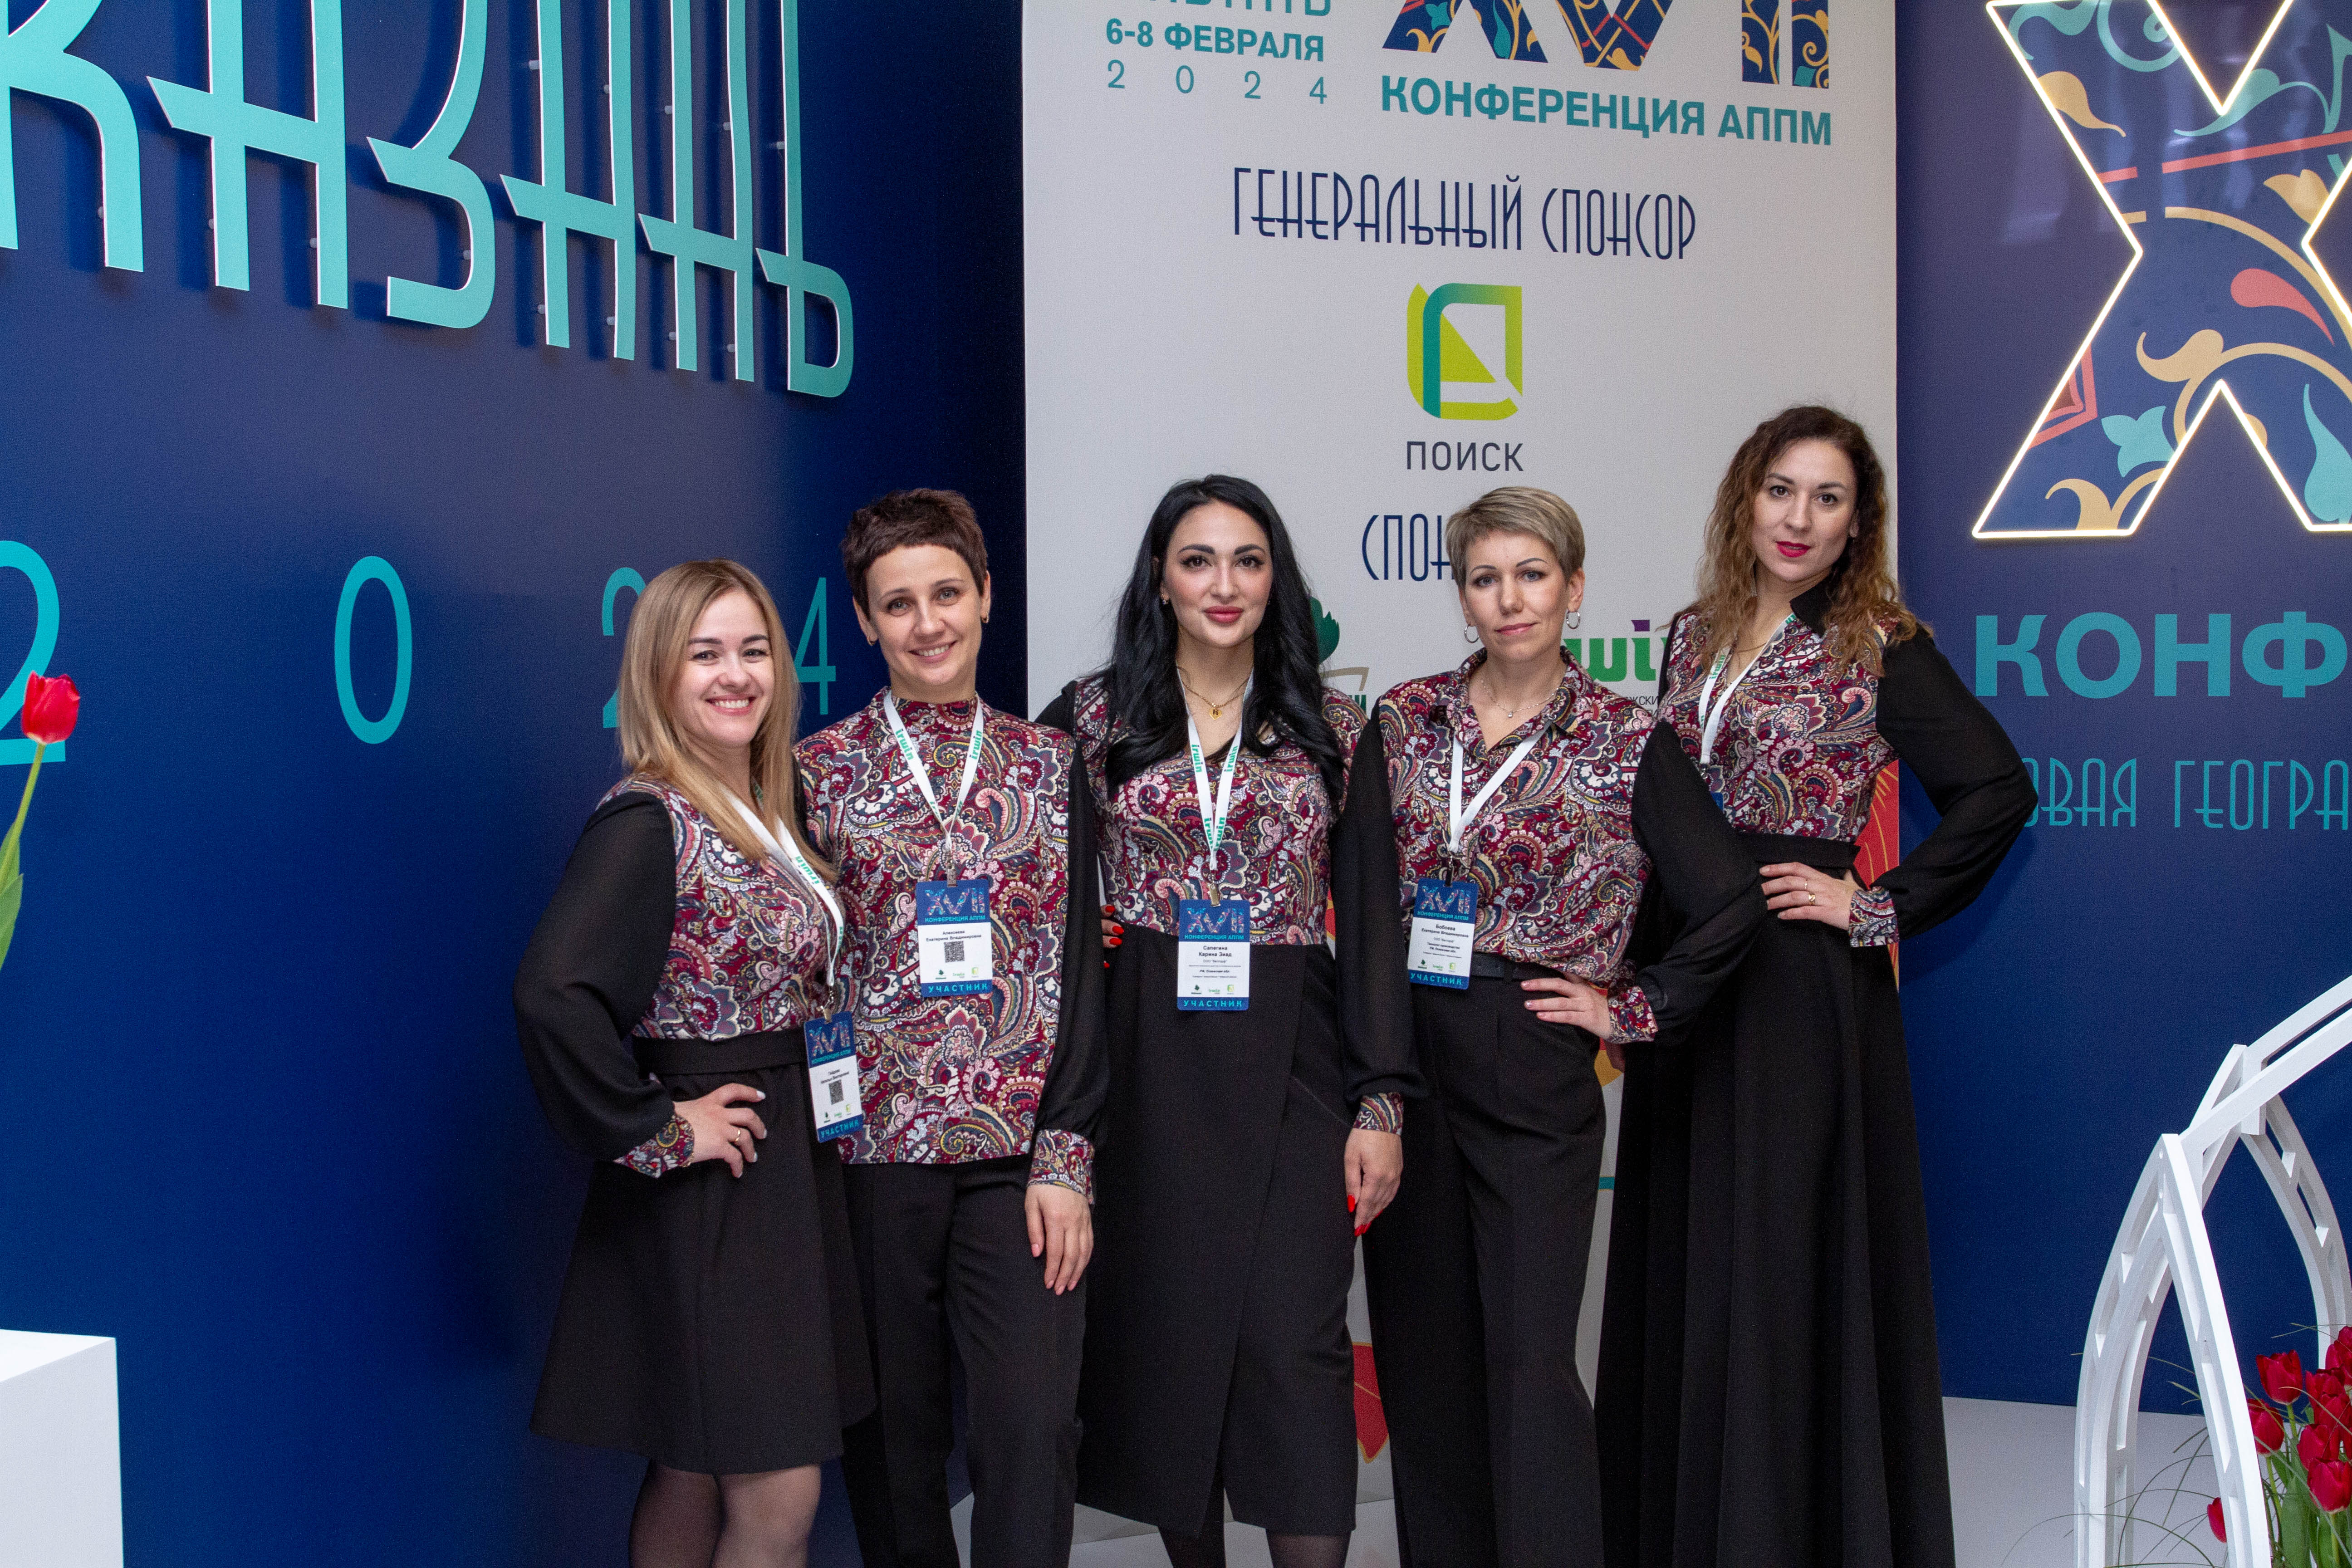 Фотоотчет с международной выставки АППМ-2024 в Казани (6-8 февраля 2024 года)